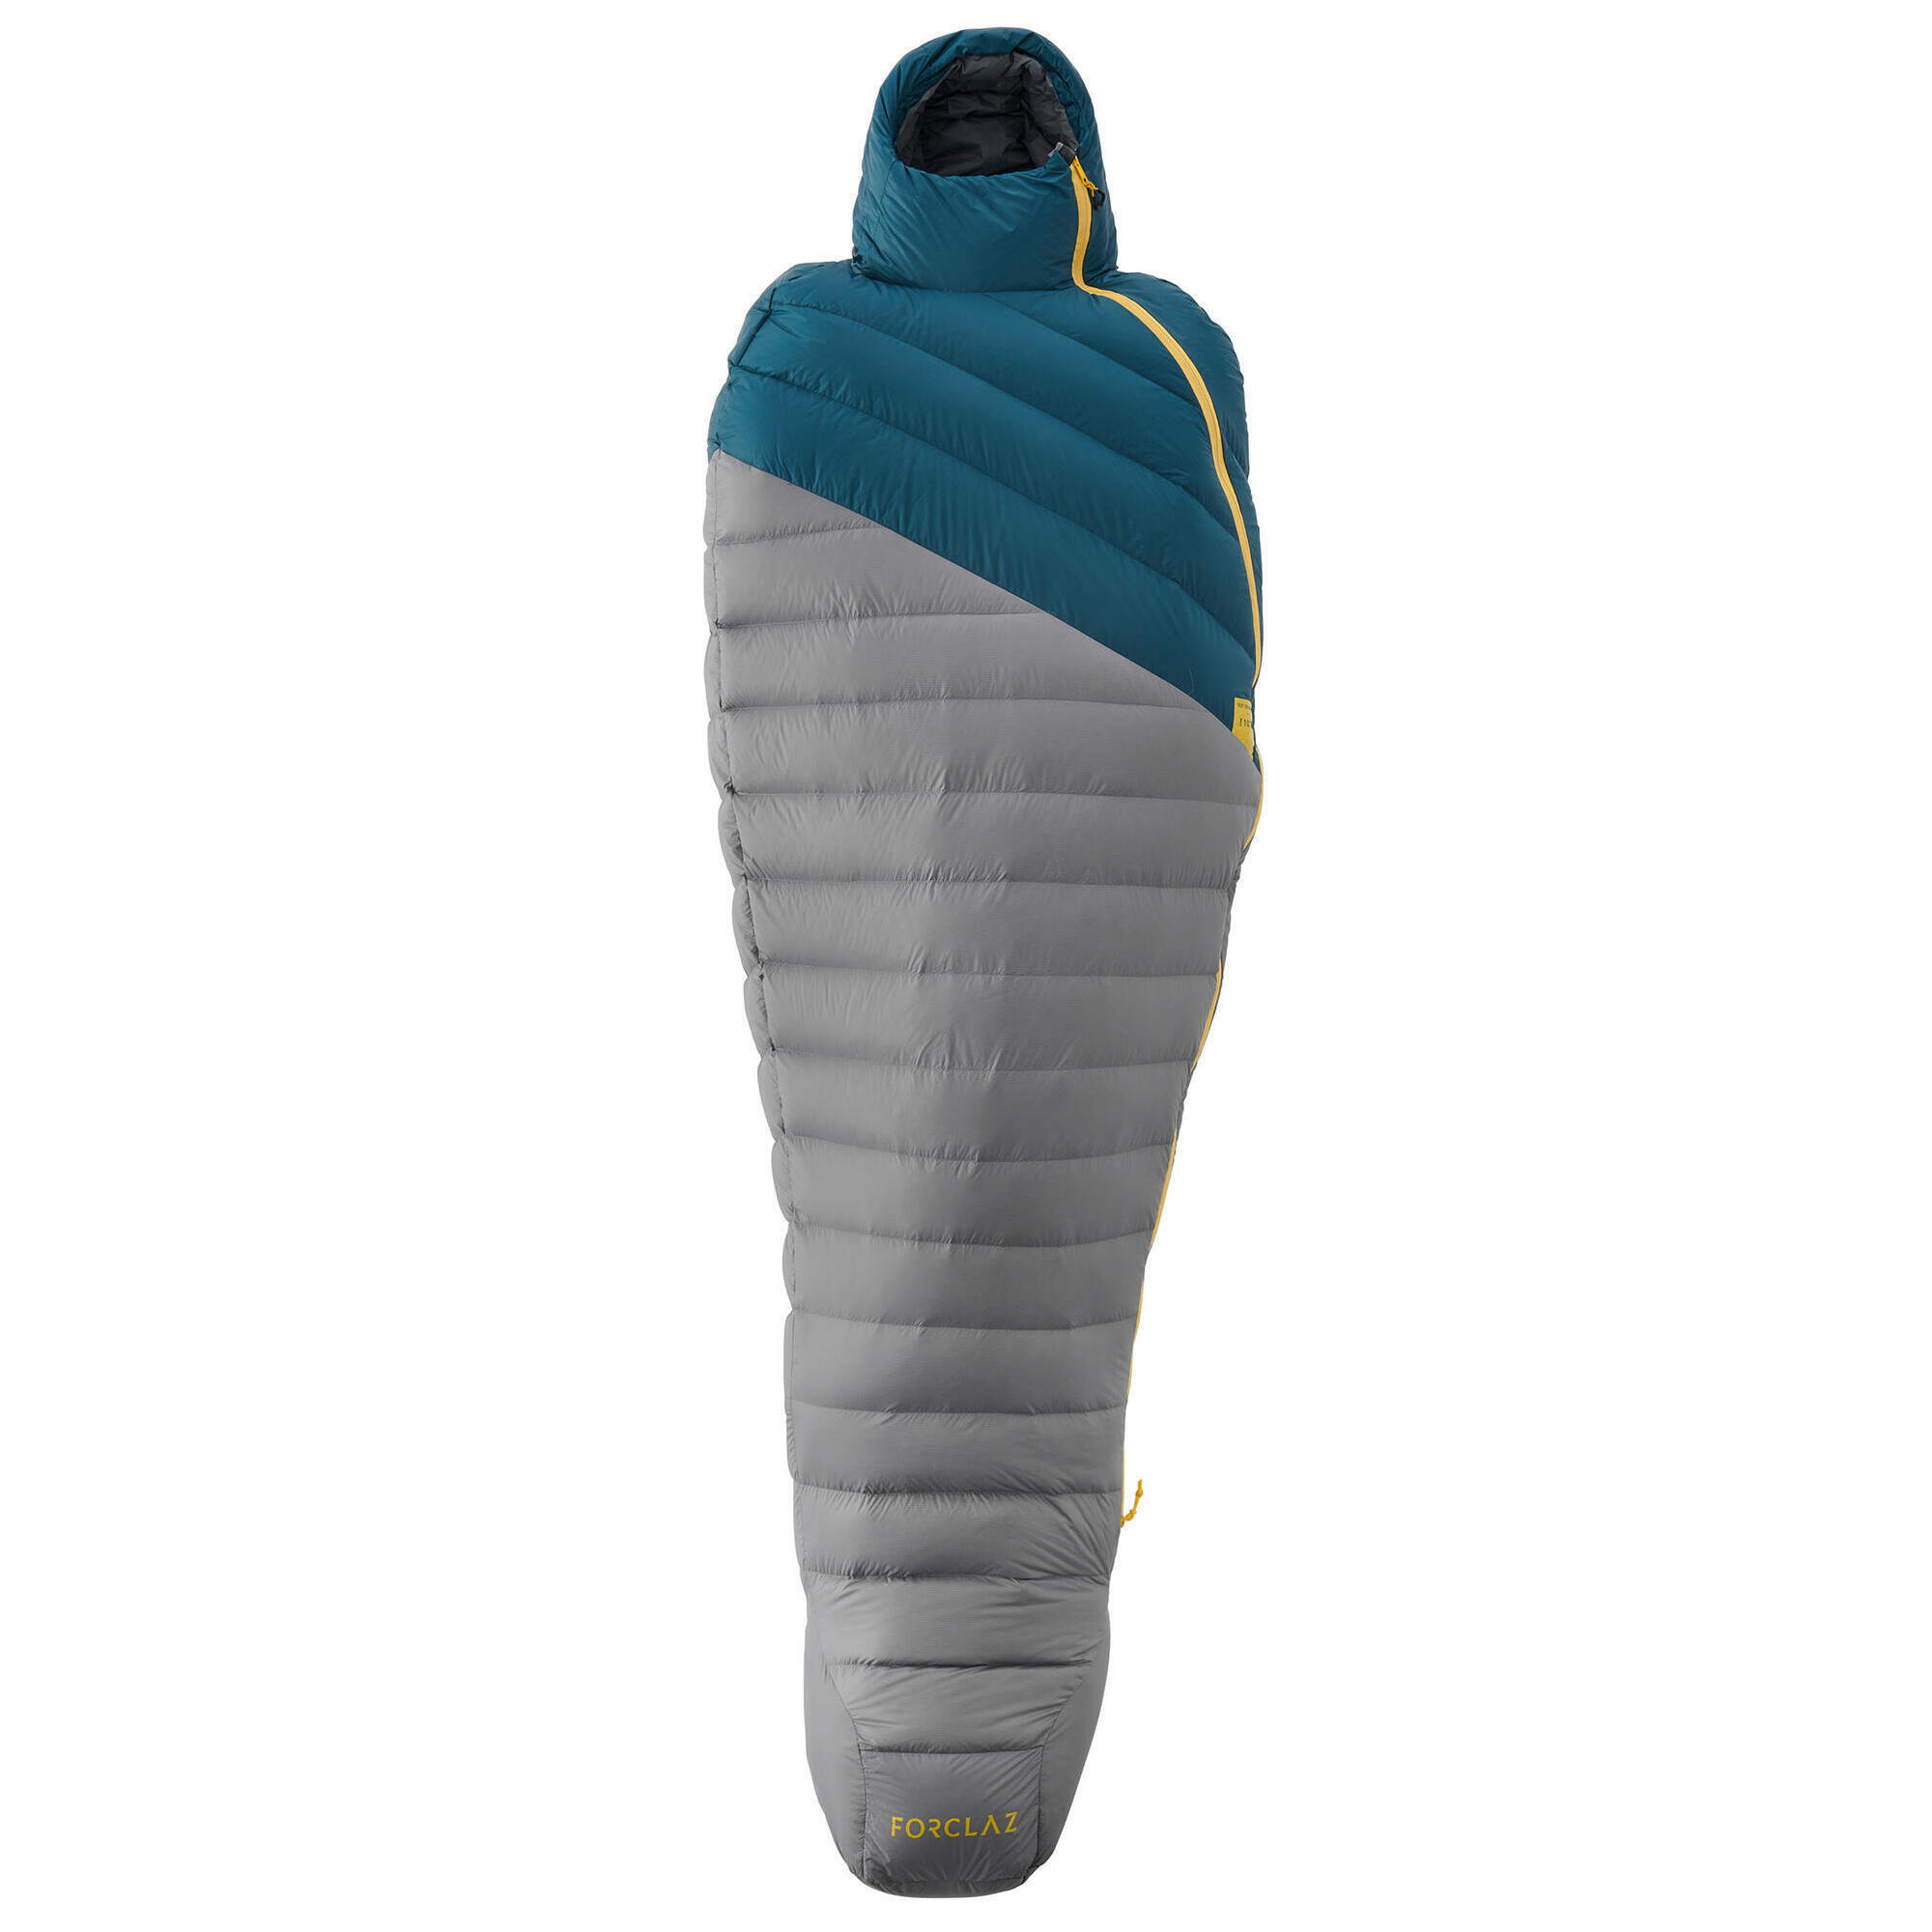 decathlon double sleeping bag